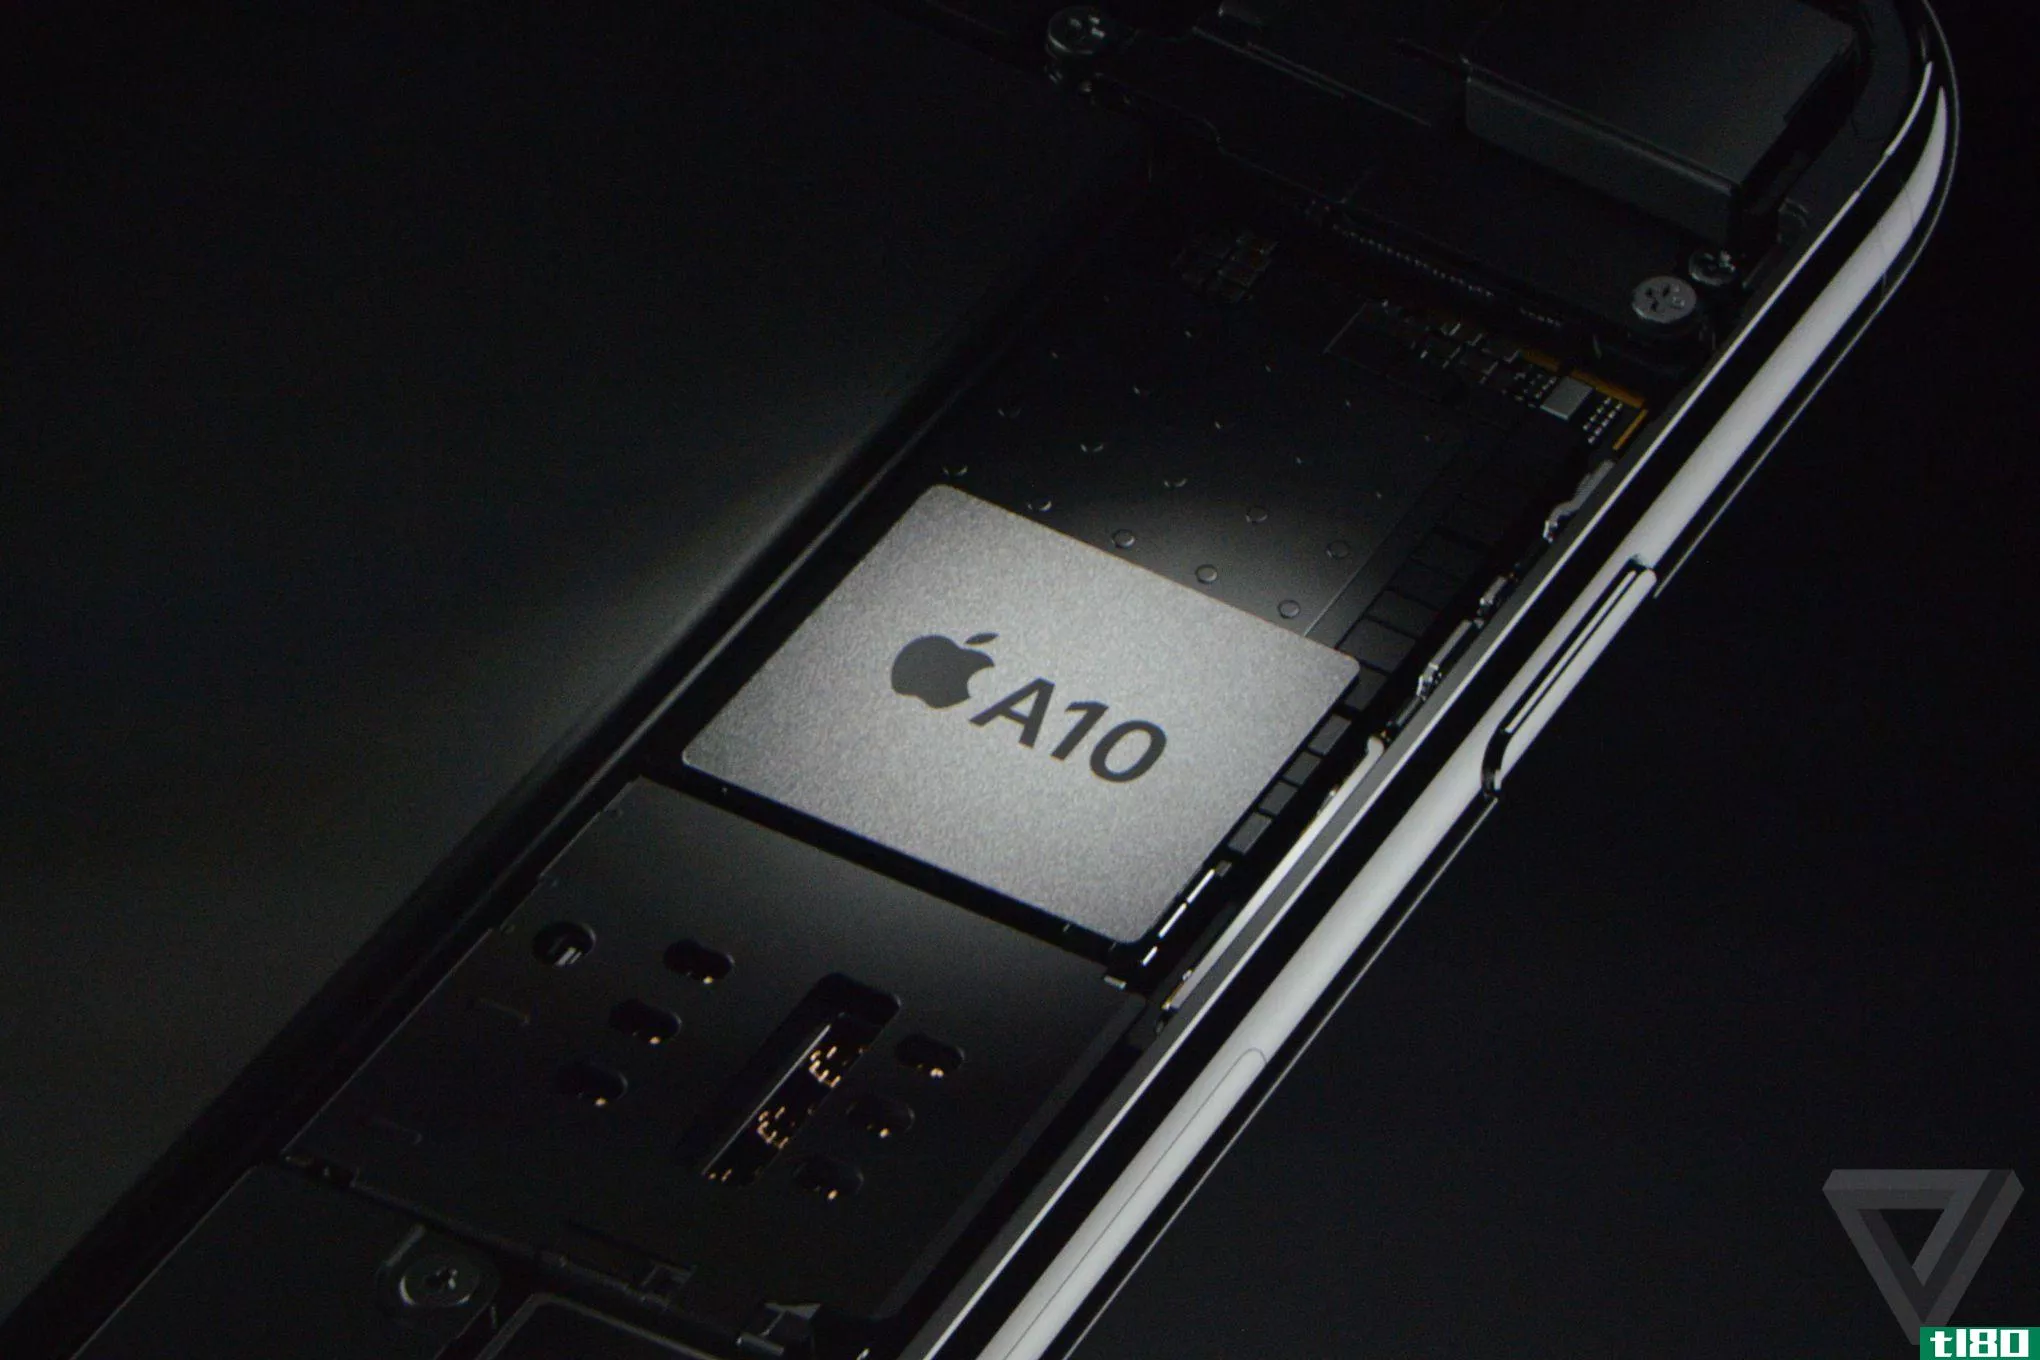 苹果新推出的a10 fusion处理器比原来的iphone快120倍